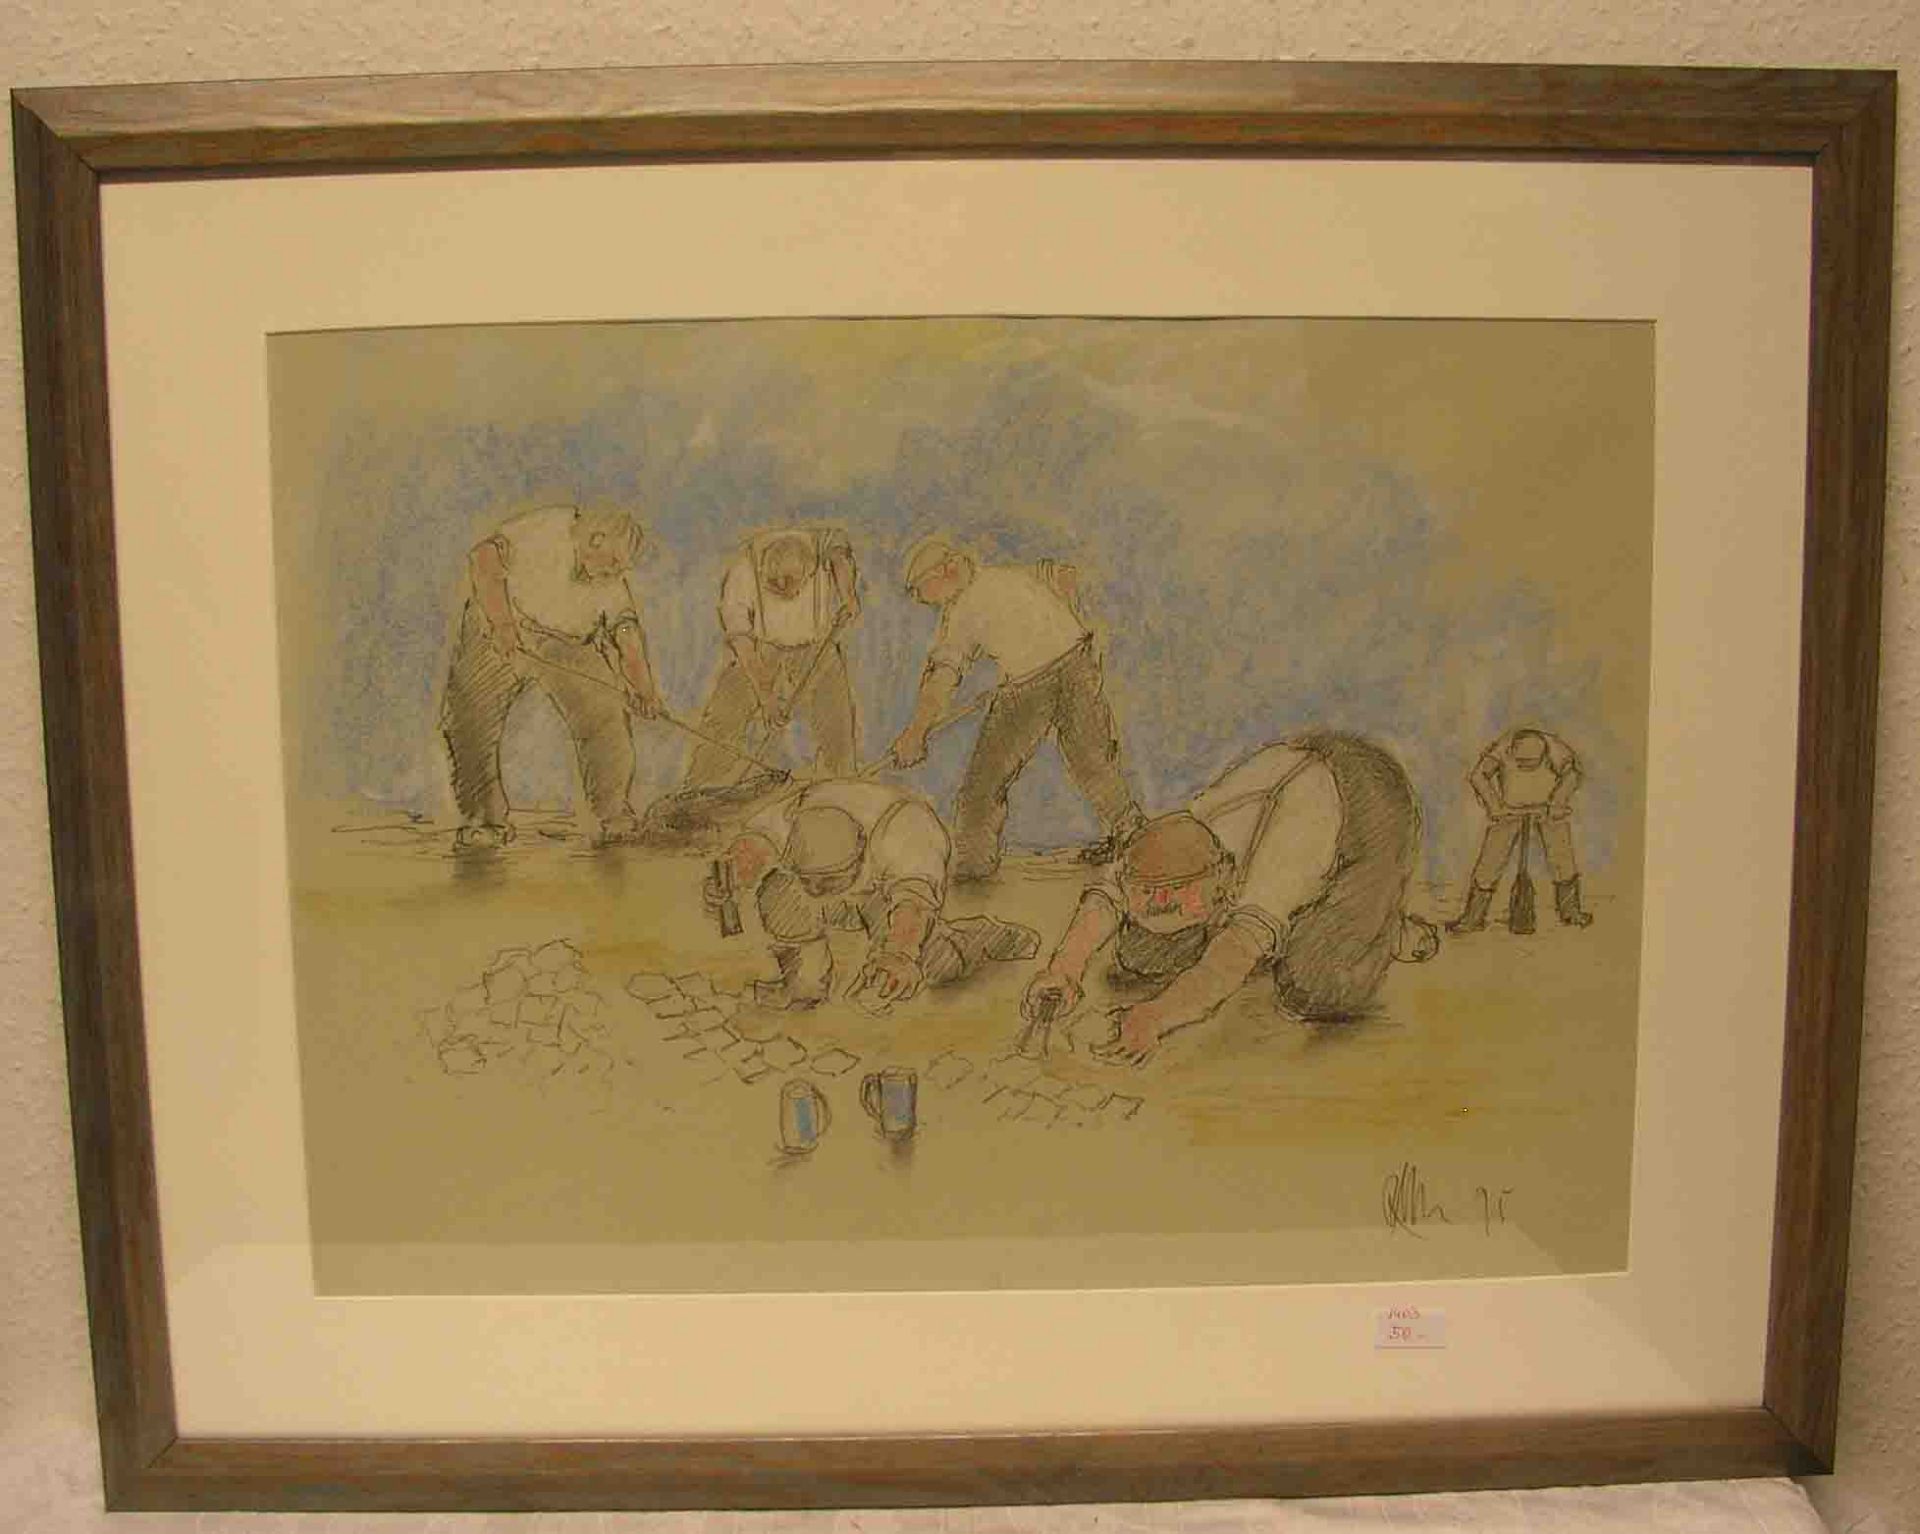 Klesse, Reinhard (1932 - 2014): "Straßenarbeiter". Buntstifte auf Papier, signiert,(19)95, 47 x